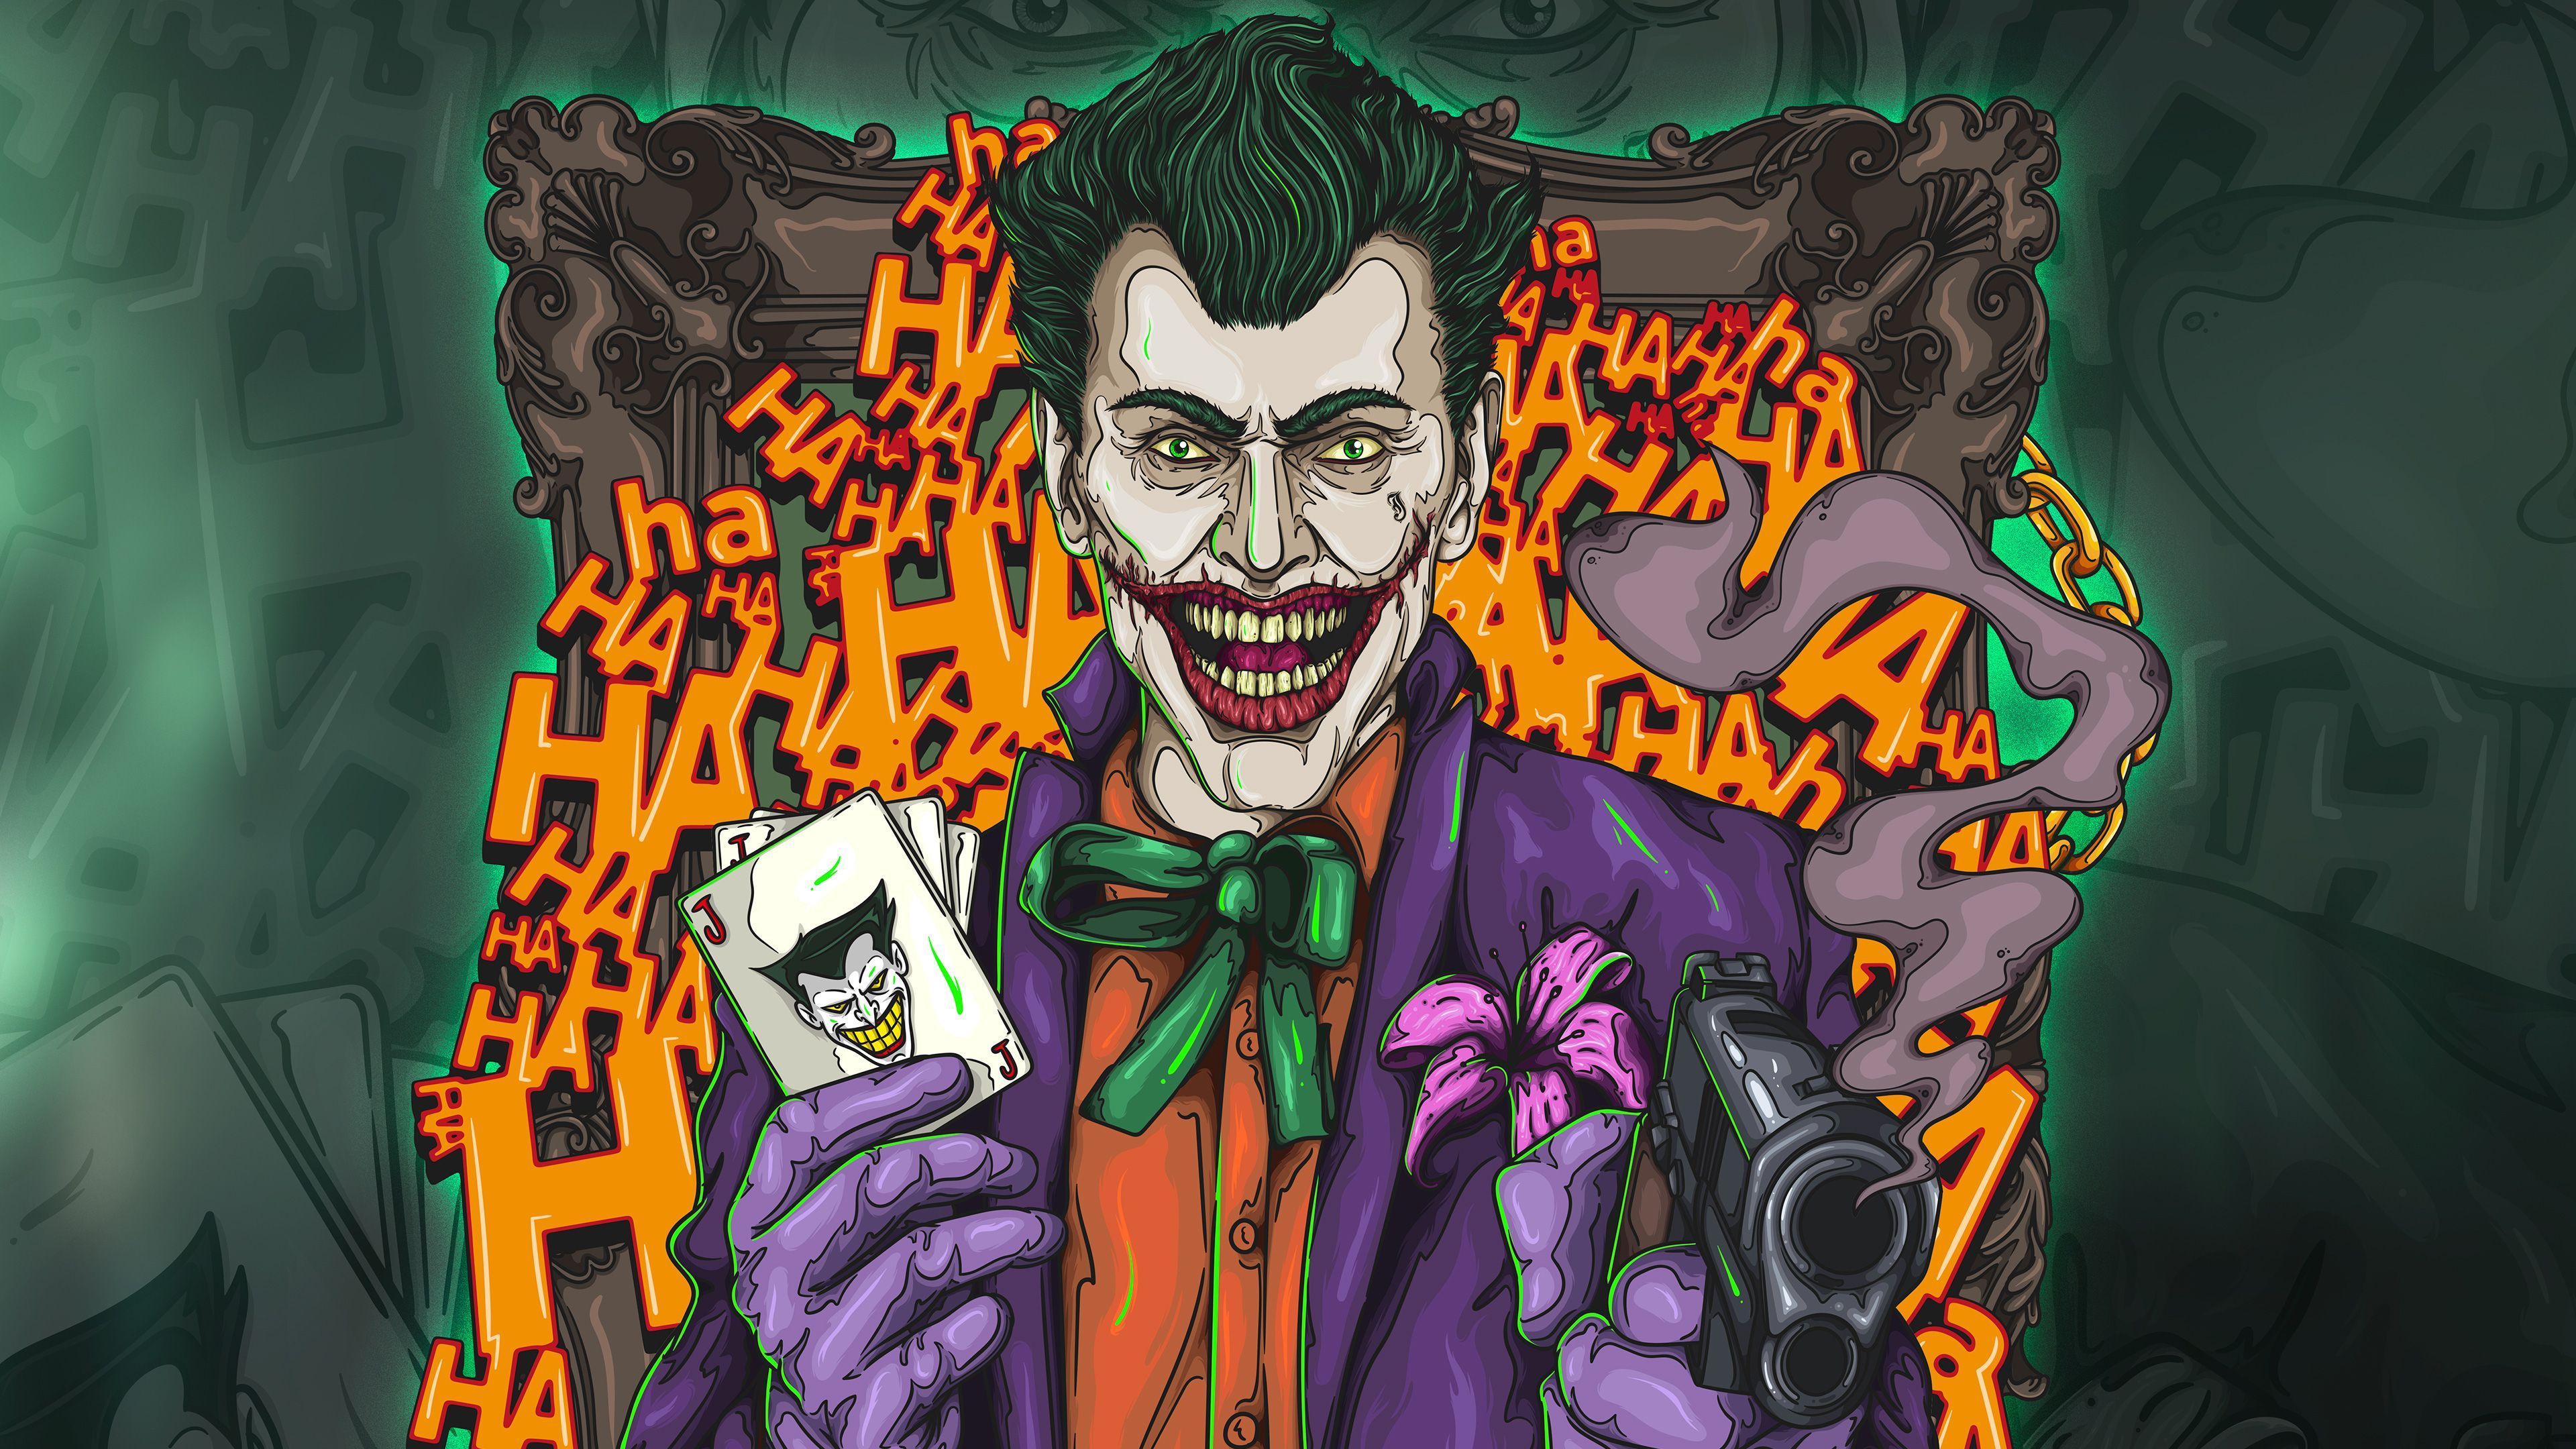 The Joker 4k Artwork Supervillain Wallpaper, Superheroes Wallpaper, Joker Wallpaper, Hd Wallpaper, Digital Art Wallpap. Joker Wallpaper, Art Wallpaper, Joker